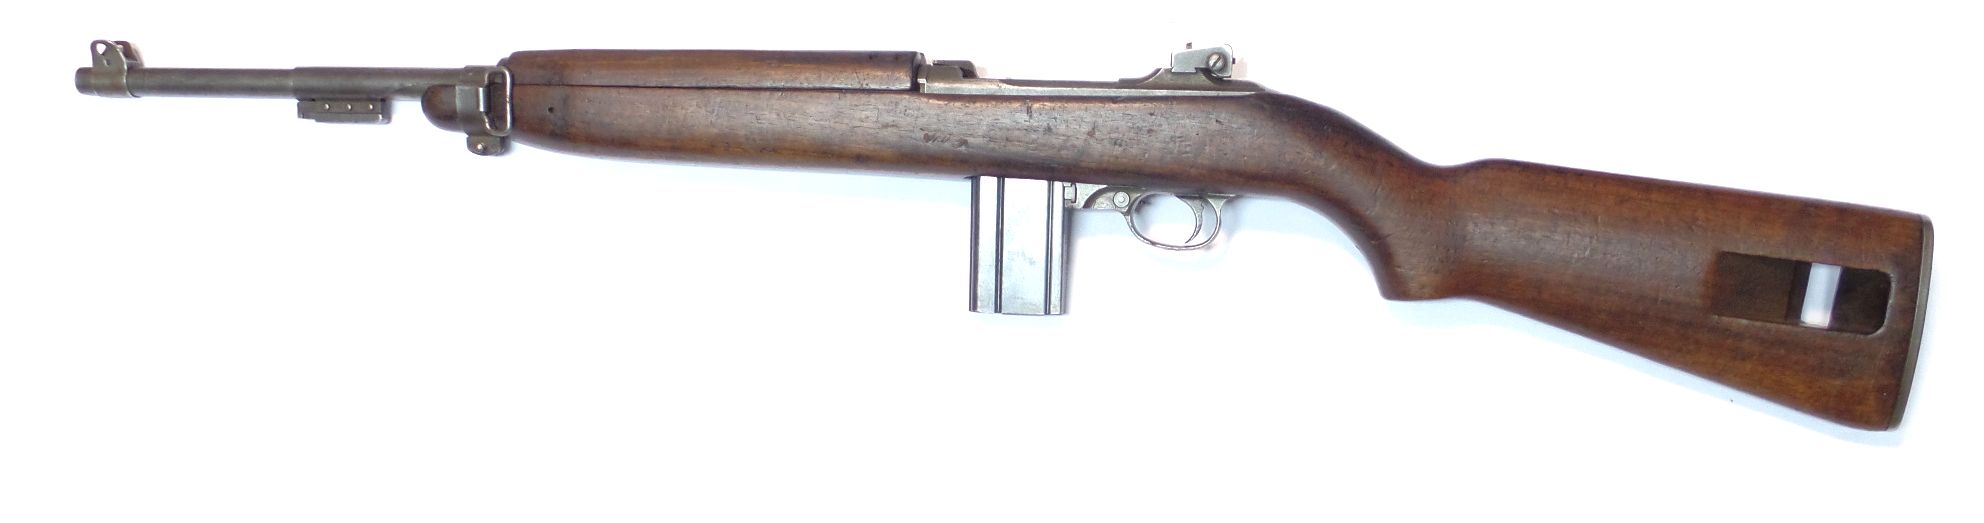 USM1 WINCHESTER calibre 30M1